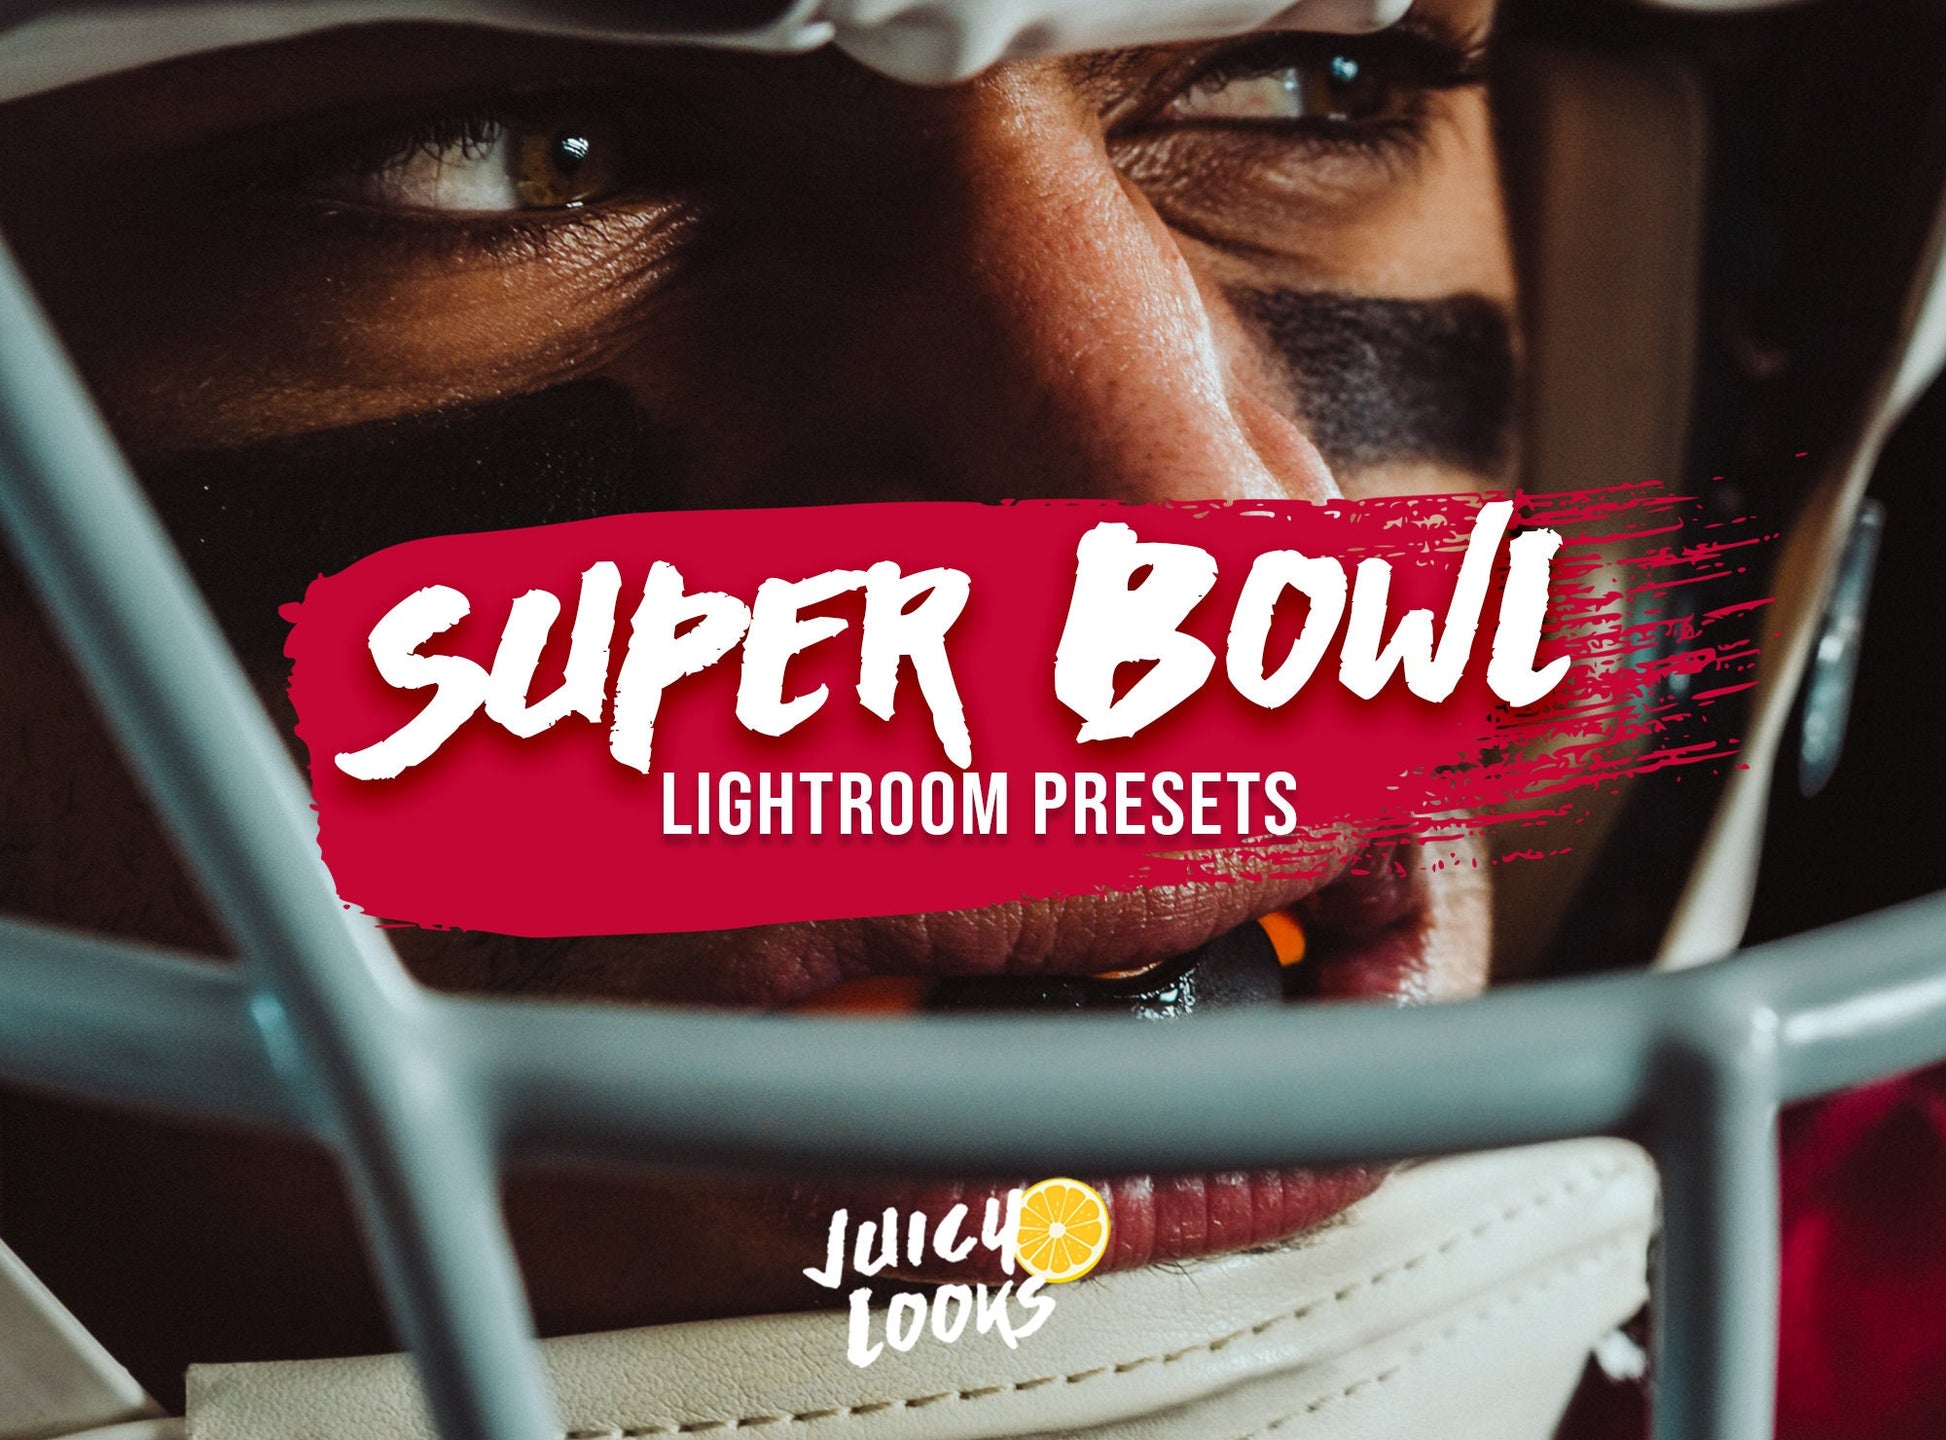 Super Bowl Lightroom Presets for Mobile & Desktop - Juicy Looks Presets